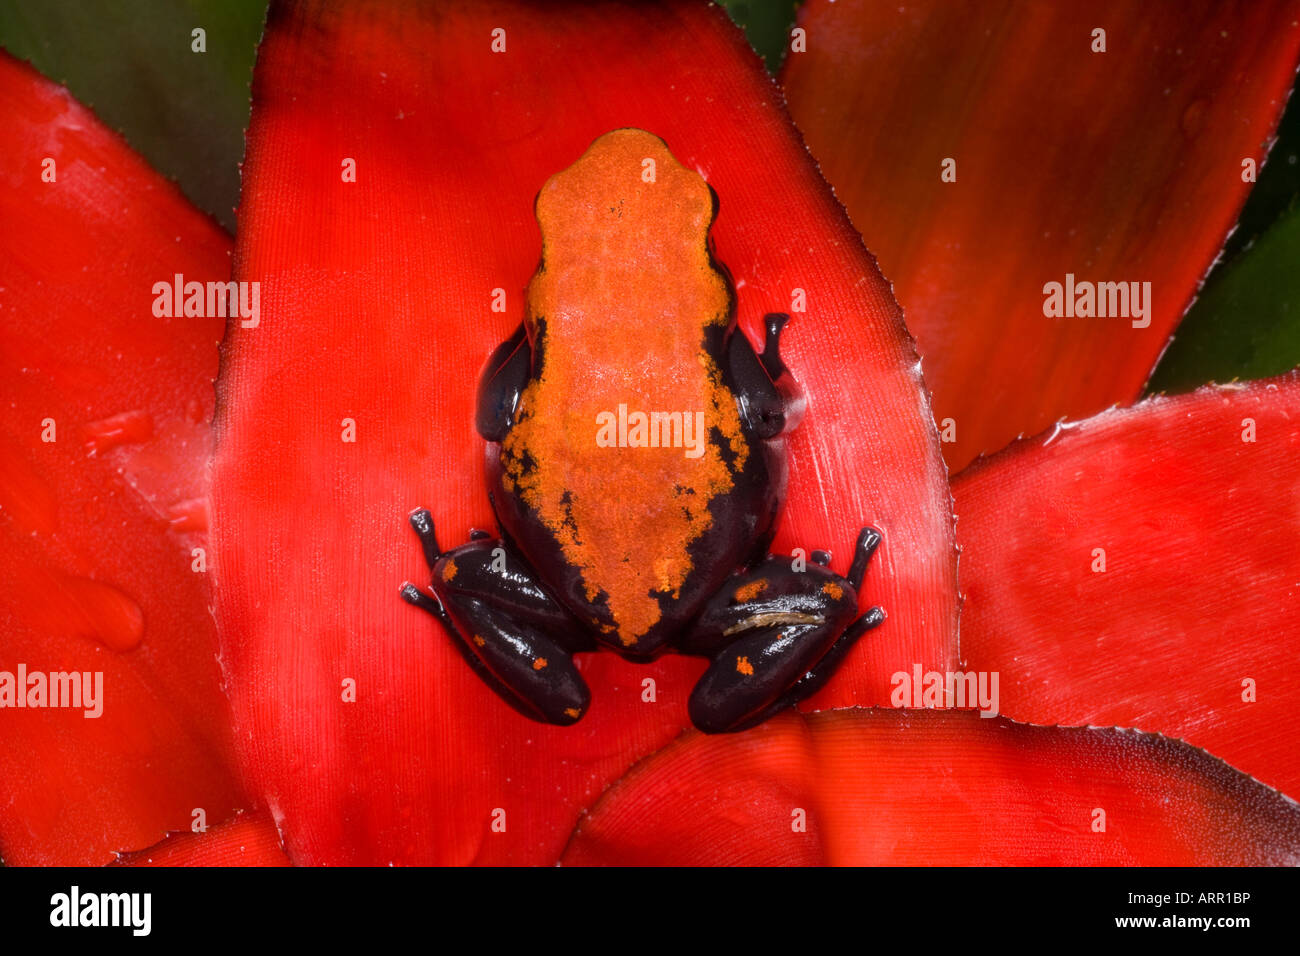 Poison dart frog (Dendrobates galactonotus), Brazil Stock Photo